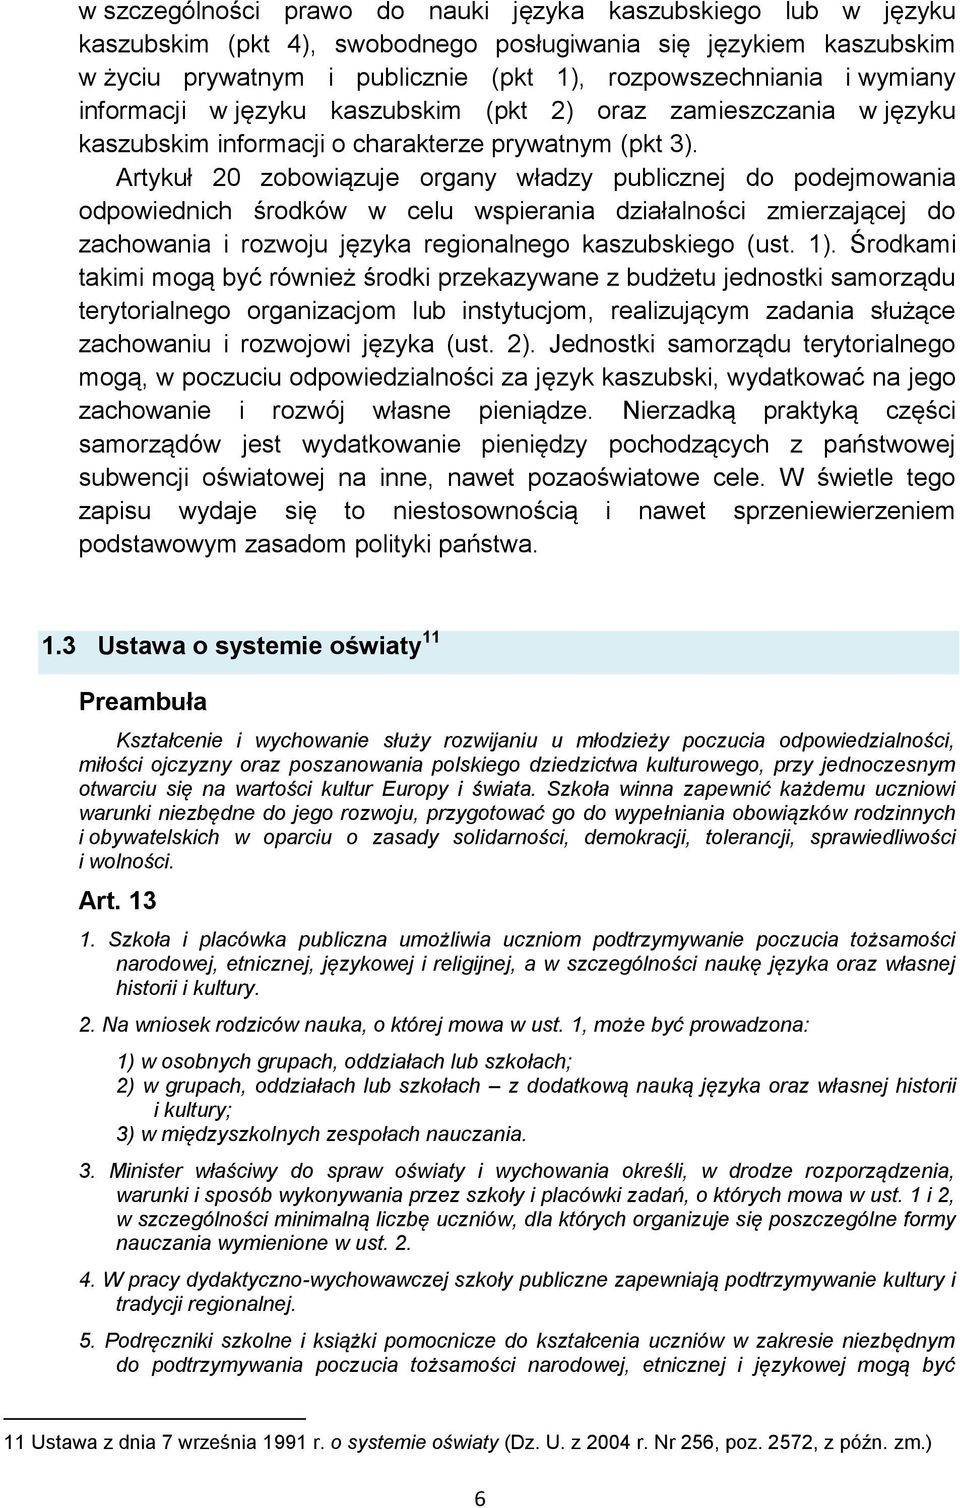 Artykuł 20 zobowiązuje organy władzy publicznej do podejmowania odpowiednich środków w celu wspierania działalności zmierzającej do zachowania i rozwoju języka regionalnego kaszubskiego (ust. 1).